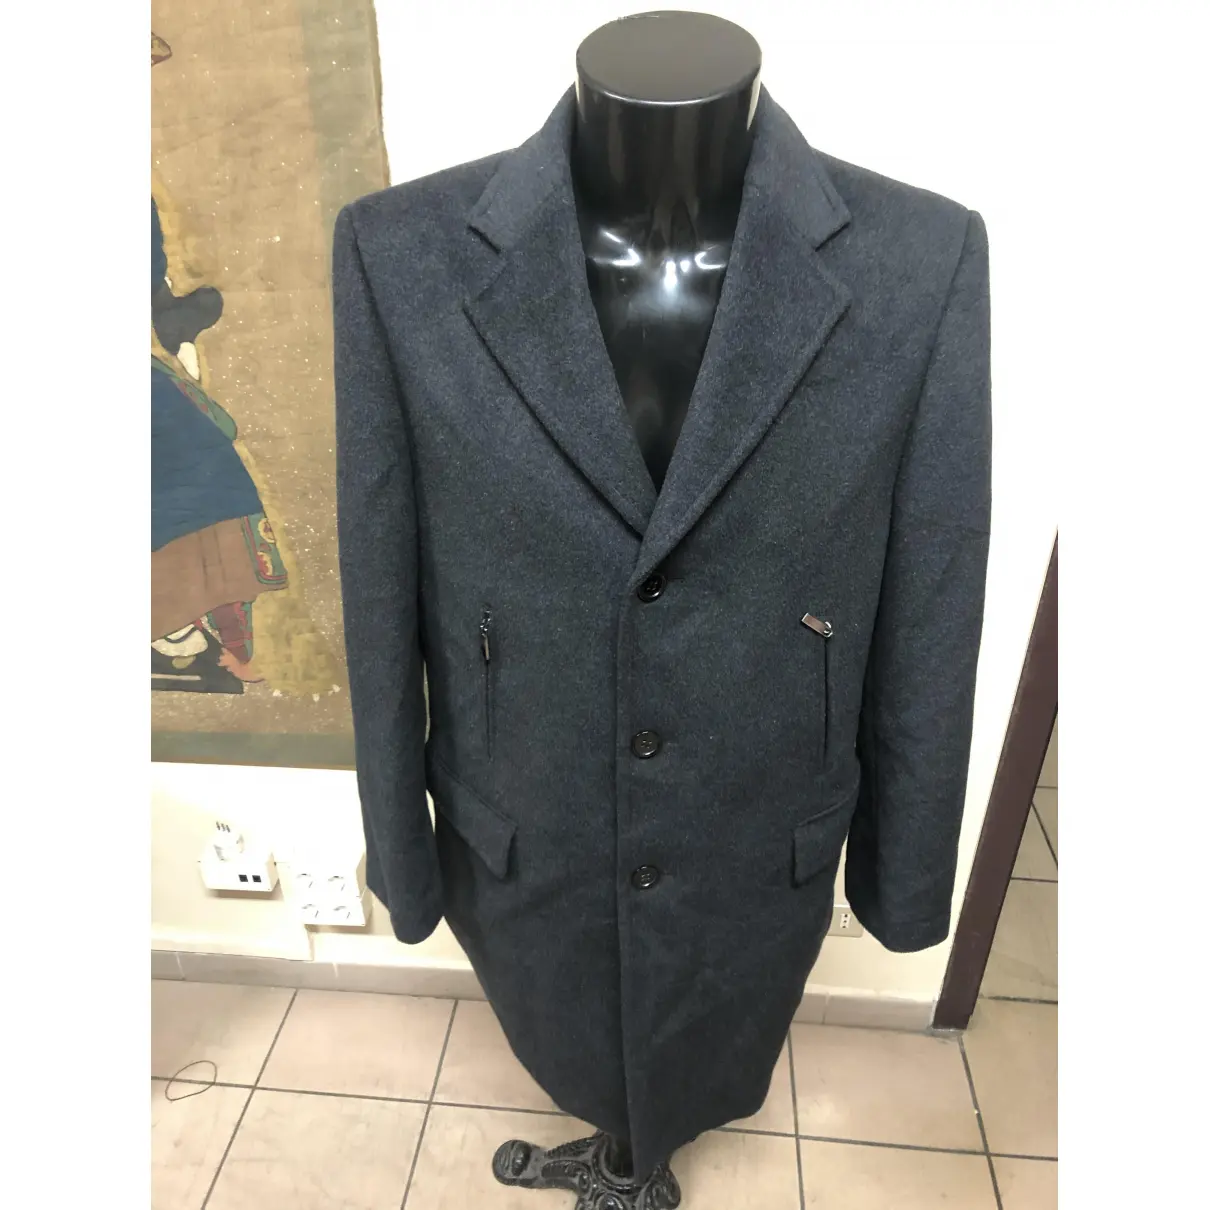 Cashmere coat Yves Saint Laurent - Vintage